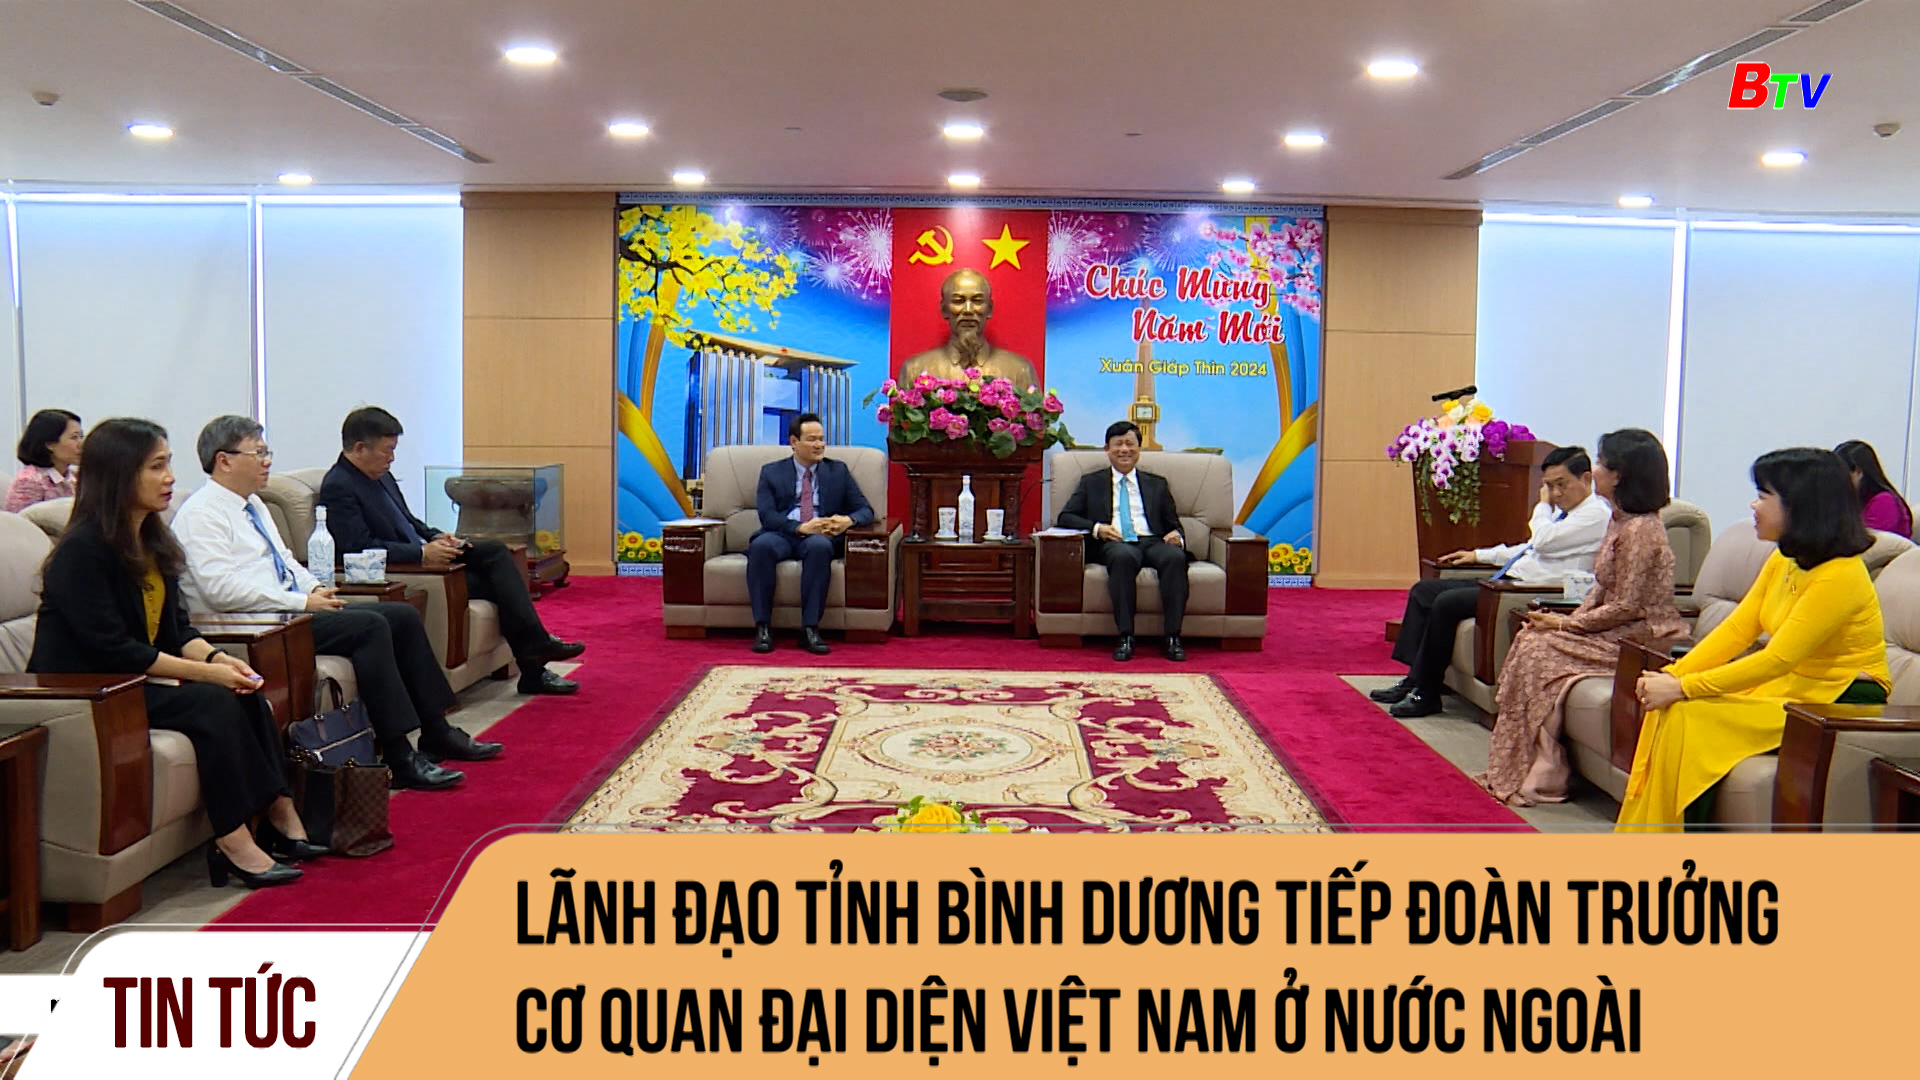 Lãnh đạo tỉnh Bình Dương tiếp Đoàn trưởng Cơ quan đại diện Việt Nam ở nước ngoài